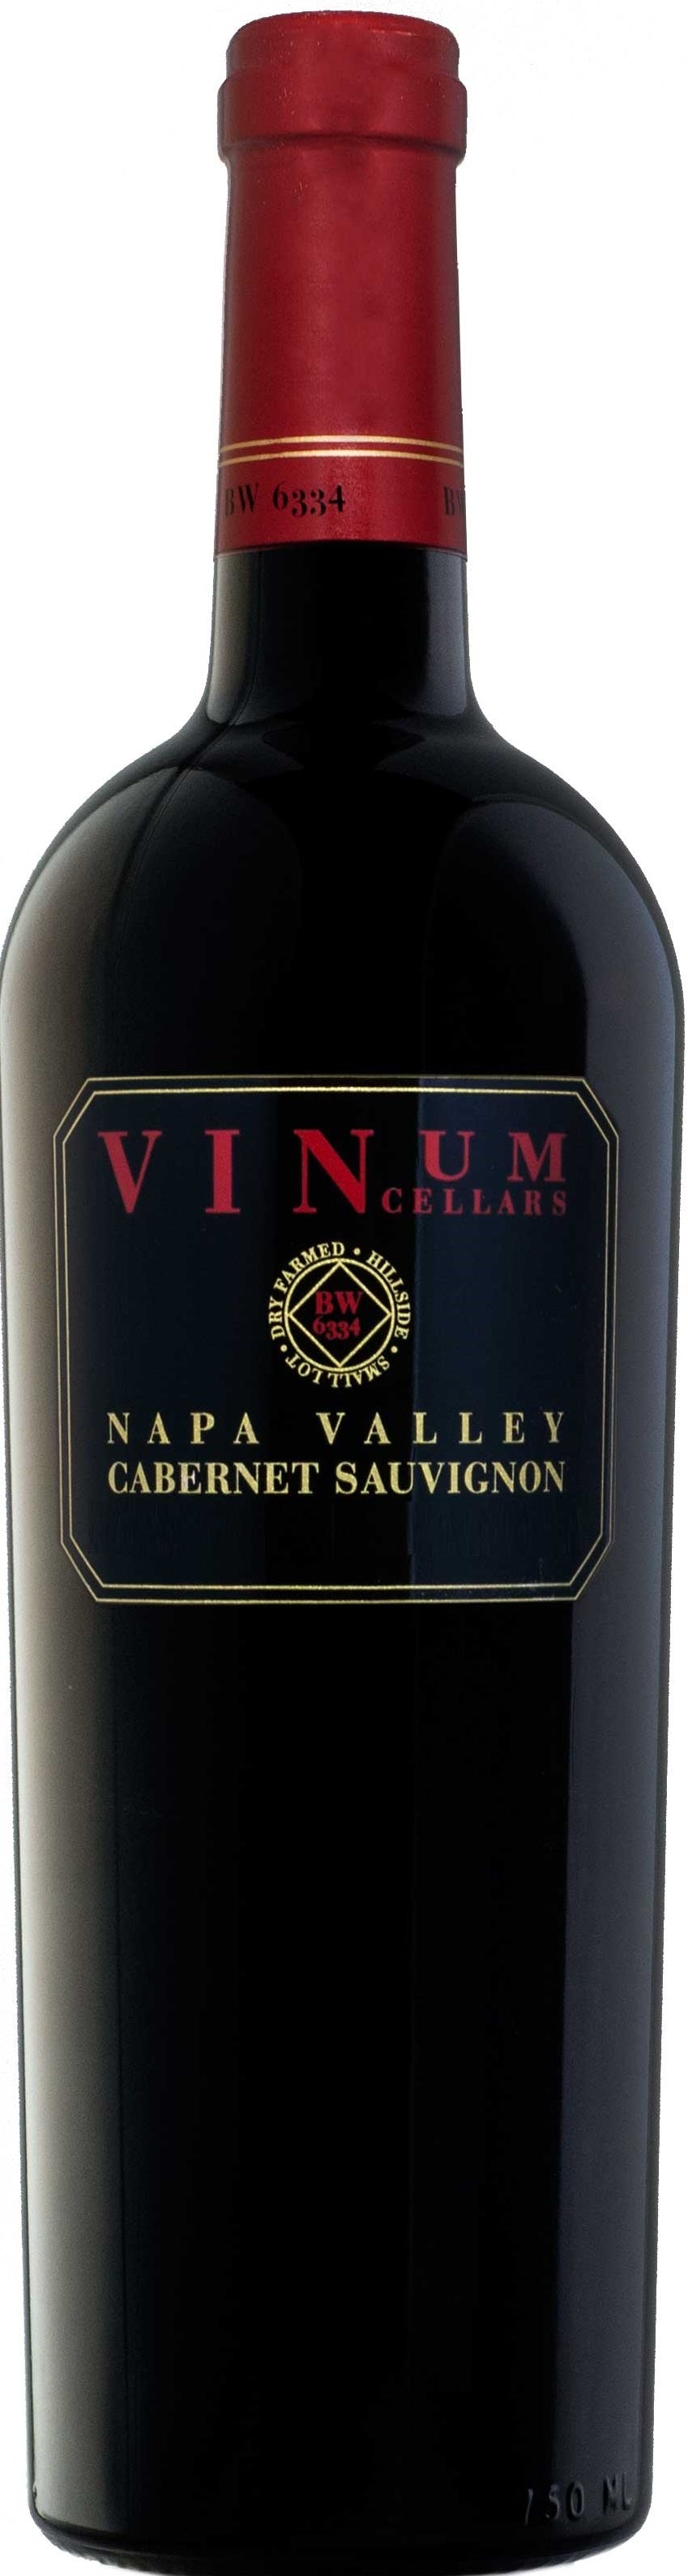 Vinum Cellars Cabernet Sauvignon 2014